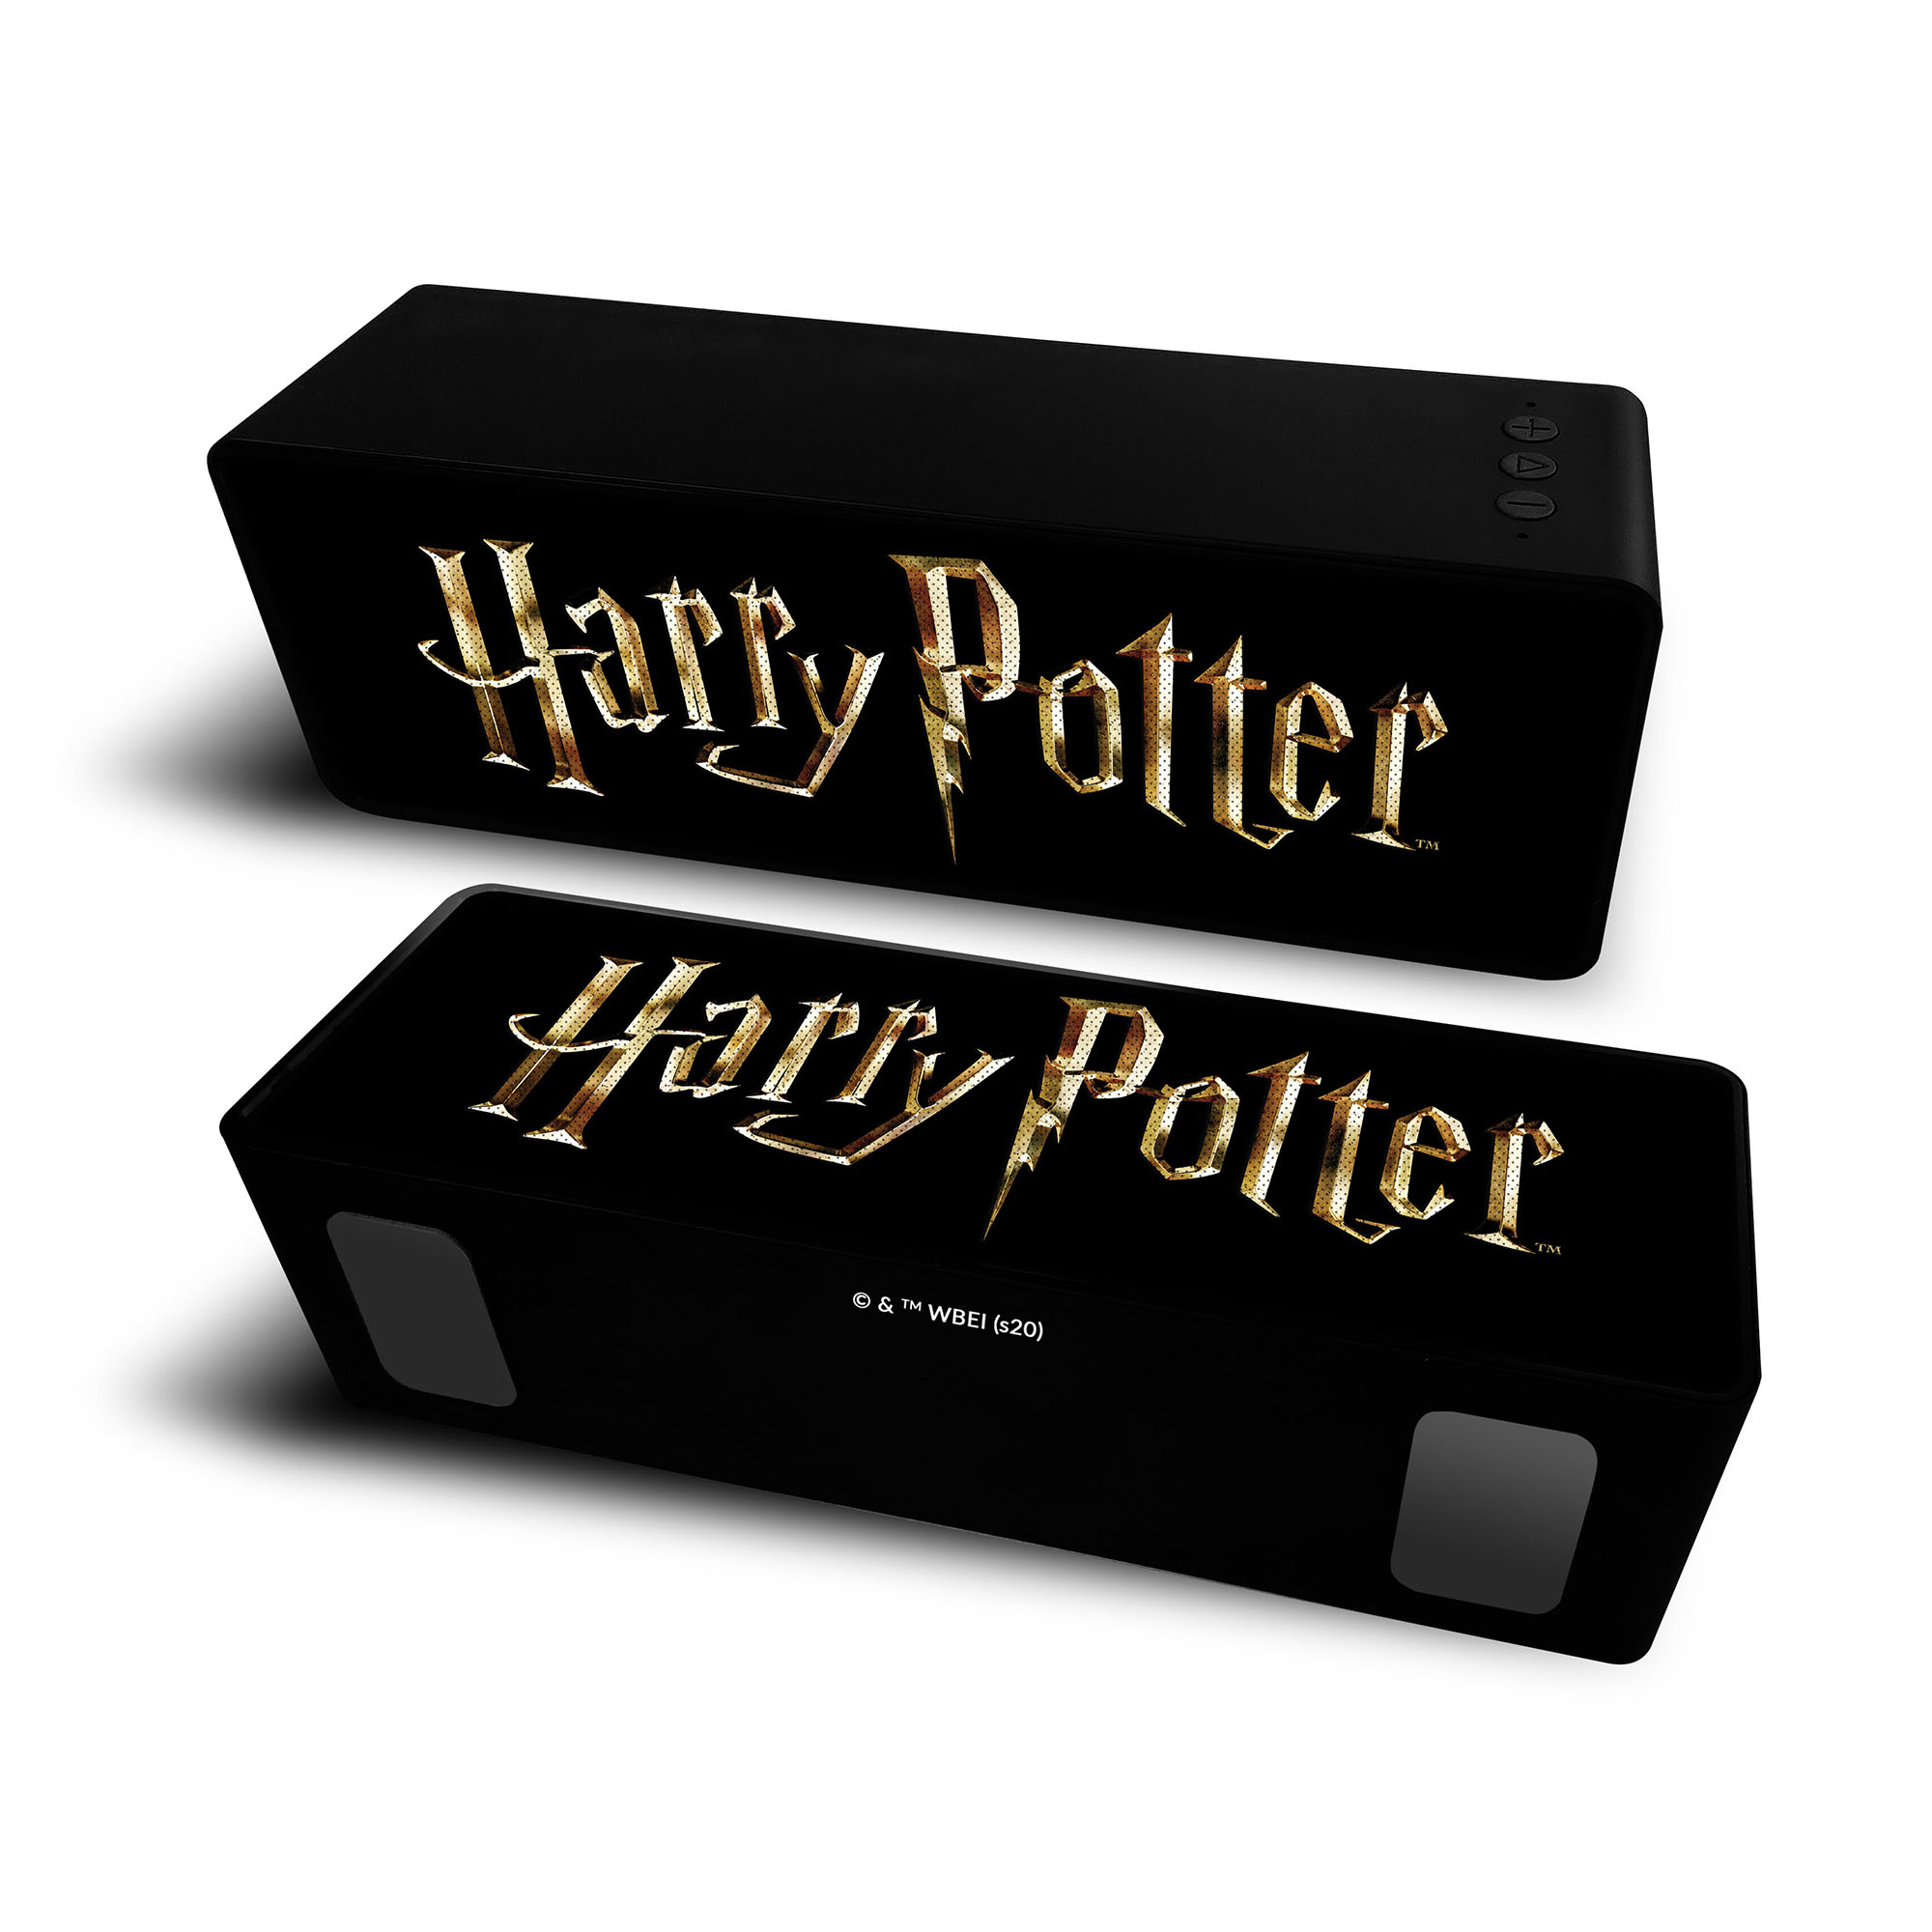 Altavoz Bt Stereo 2.1 Portátil Inalambrico 10w Harry Potter Harry Potter  MKP